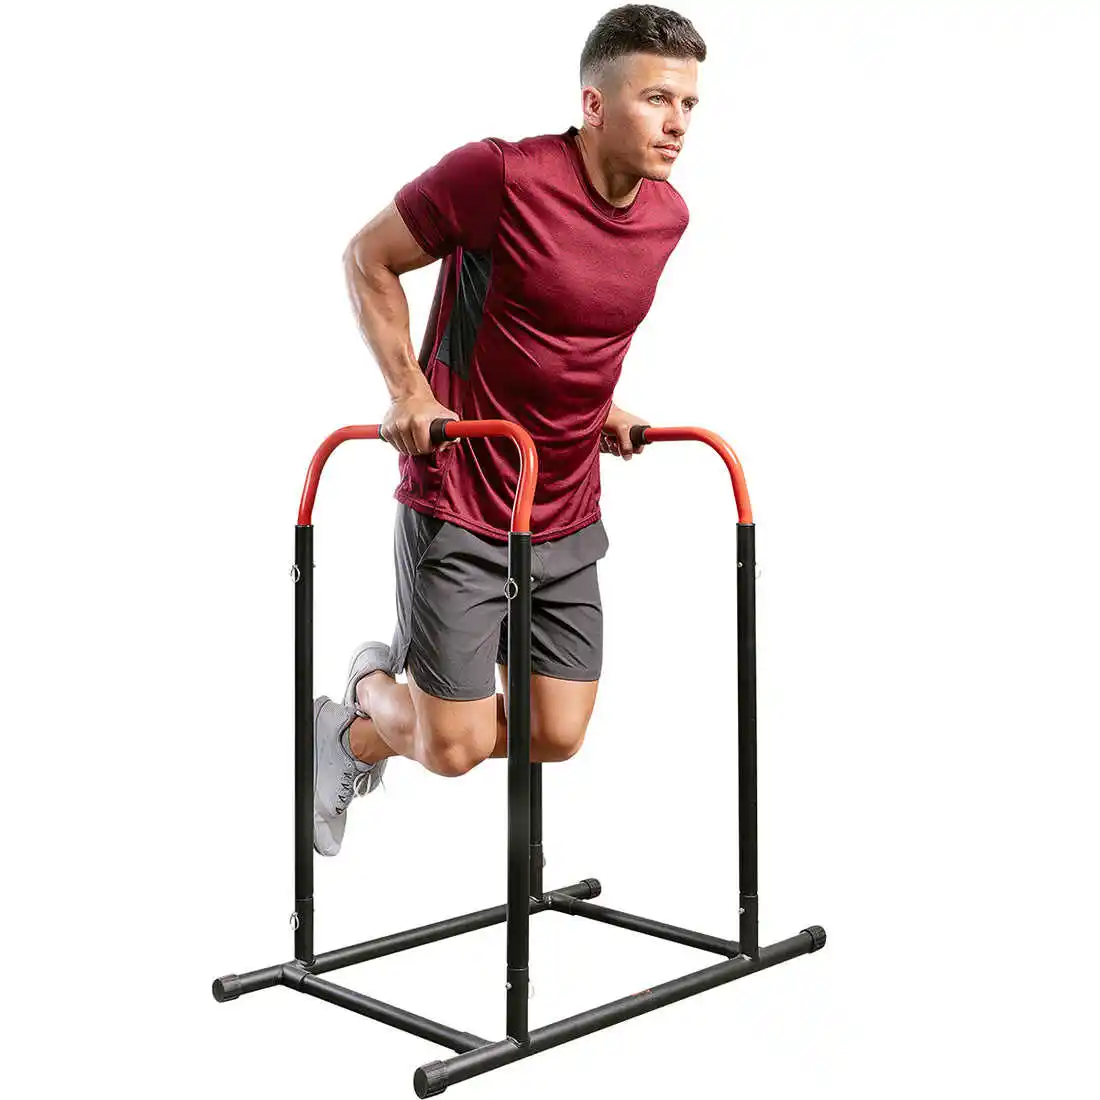 Fabricante de barras personalizadas DIP split barra paralela para gimnasio fitness Parallette Push Up equipo de fuerza entrenamiento de equilibrio